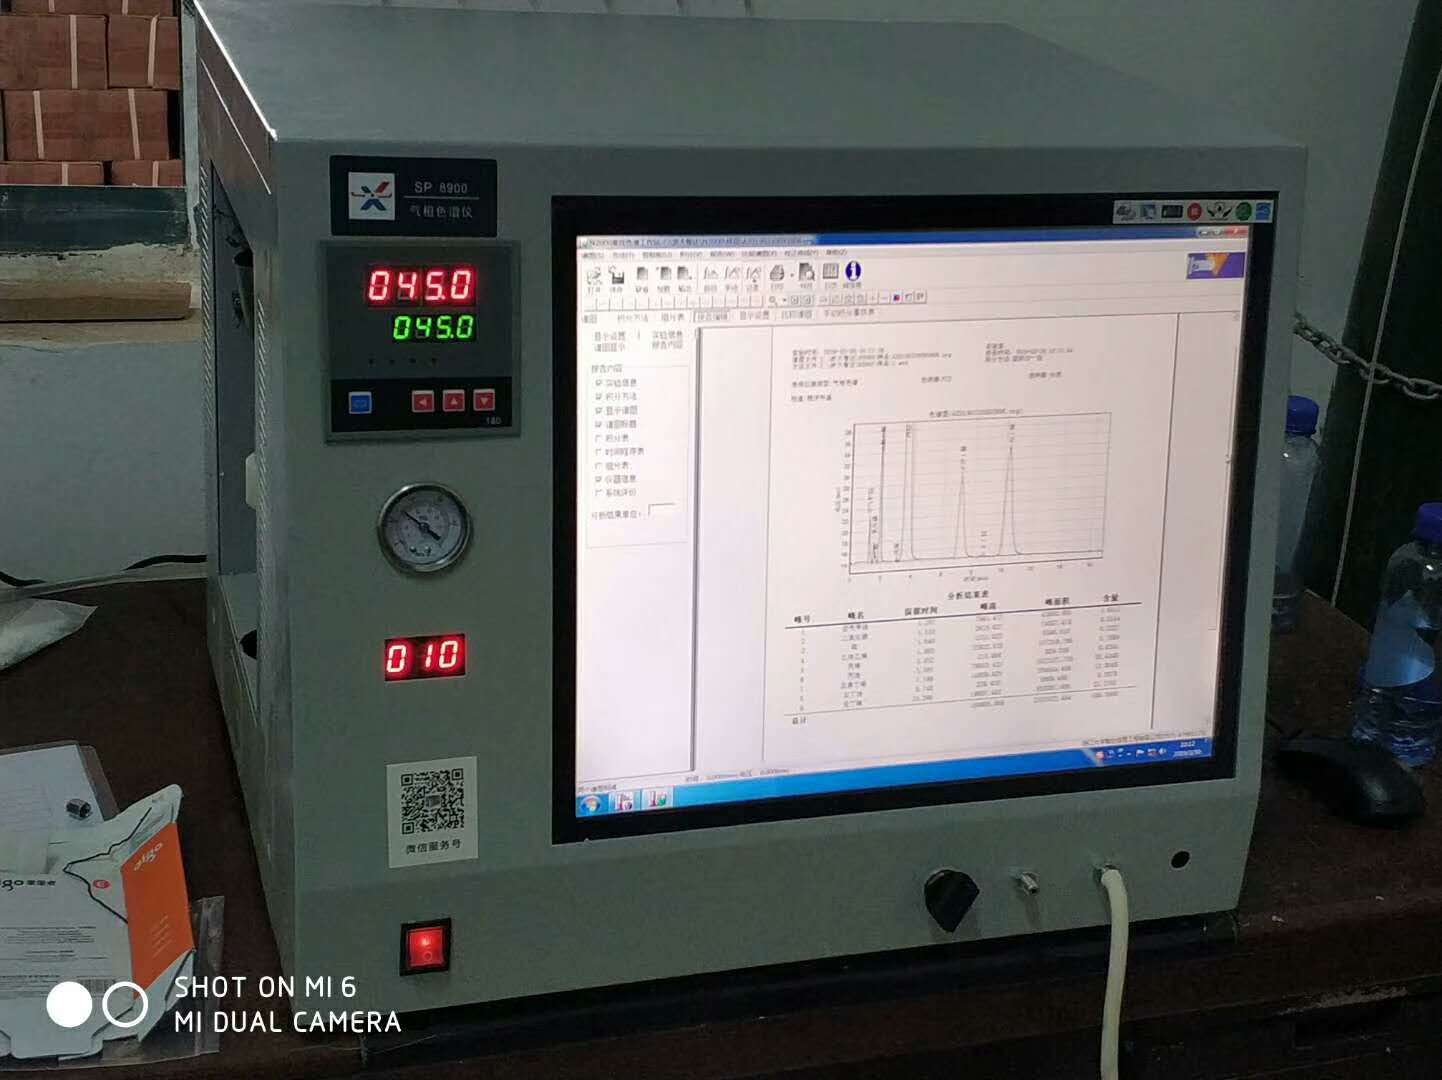 天然气组分及热值分析仪山东SP7890B天然气组分及热值分析仪生产厂家